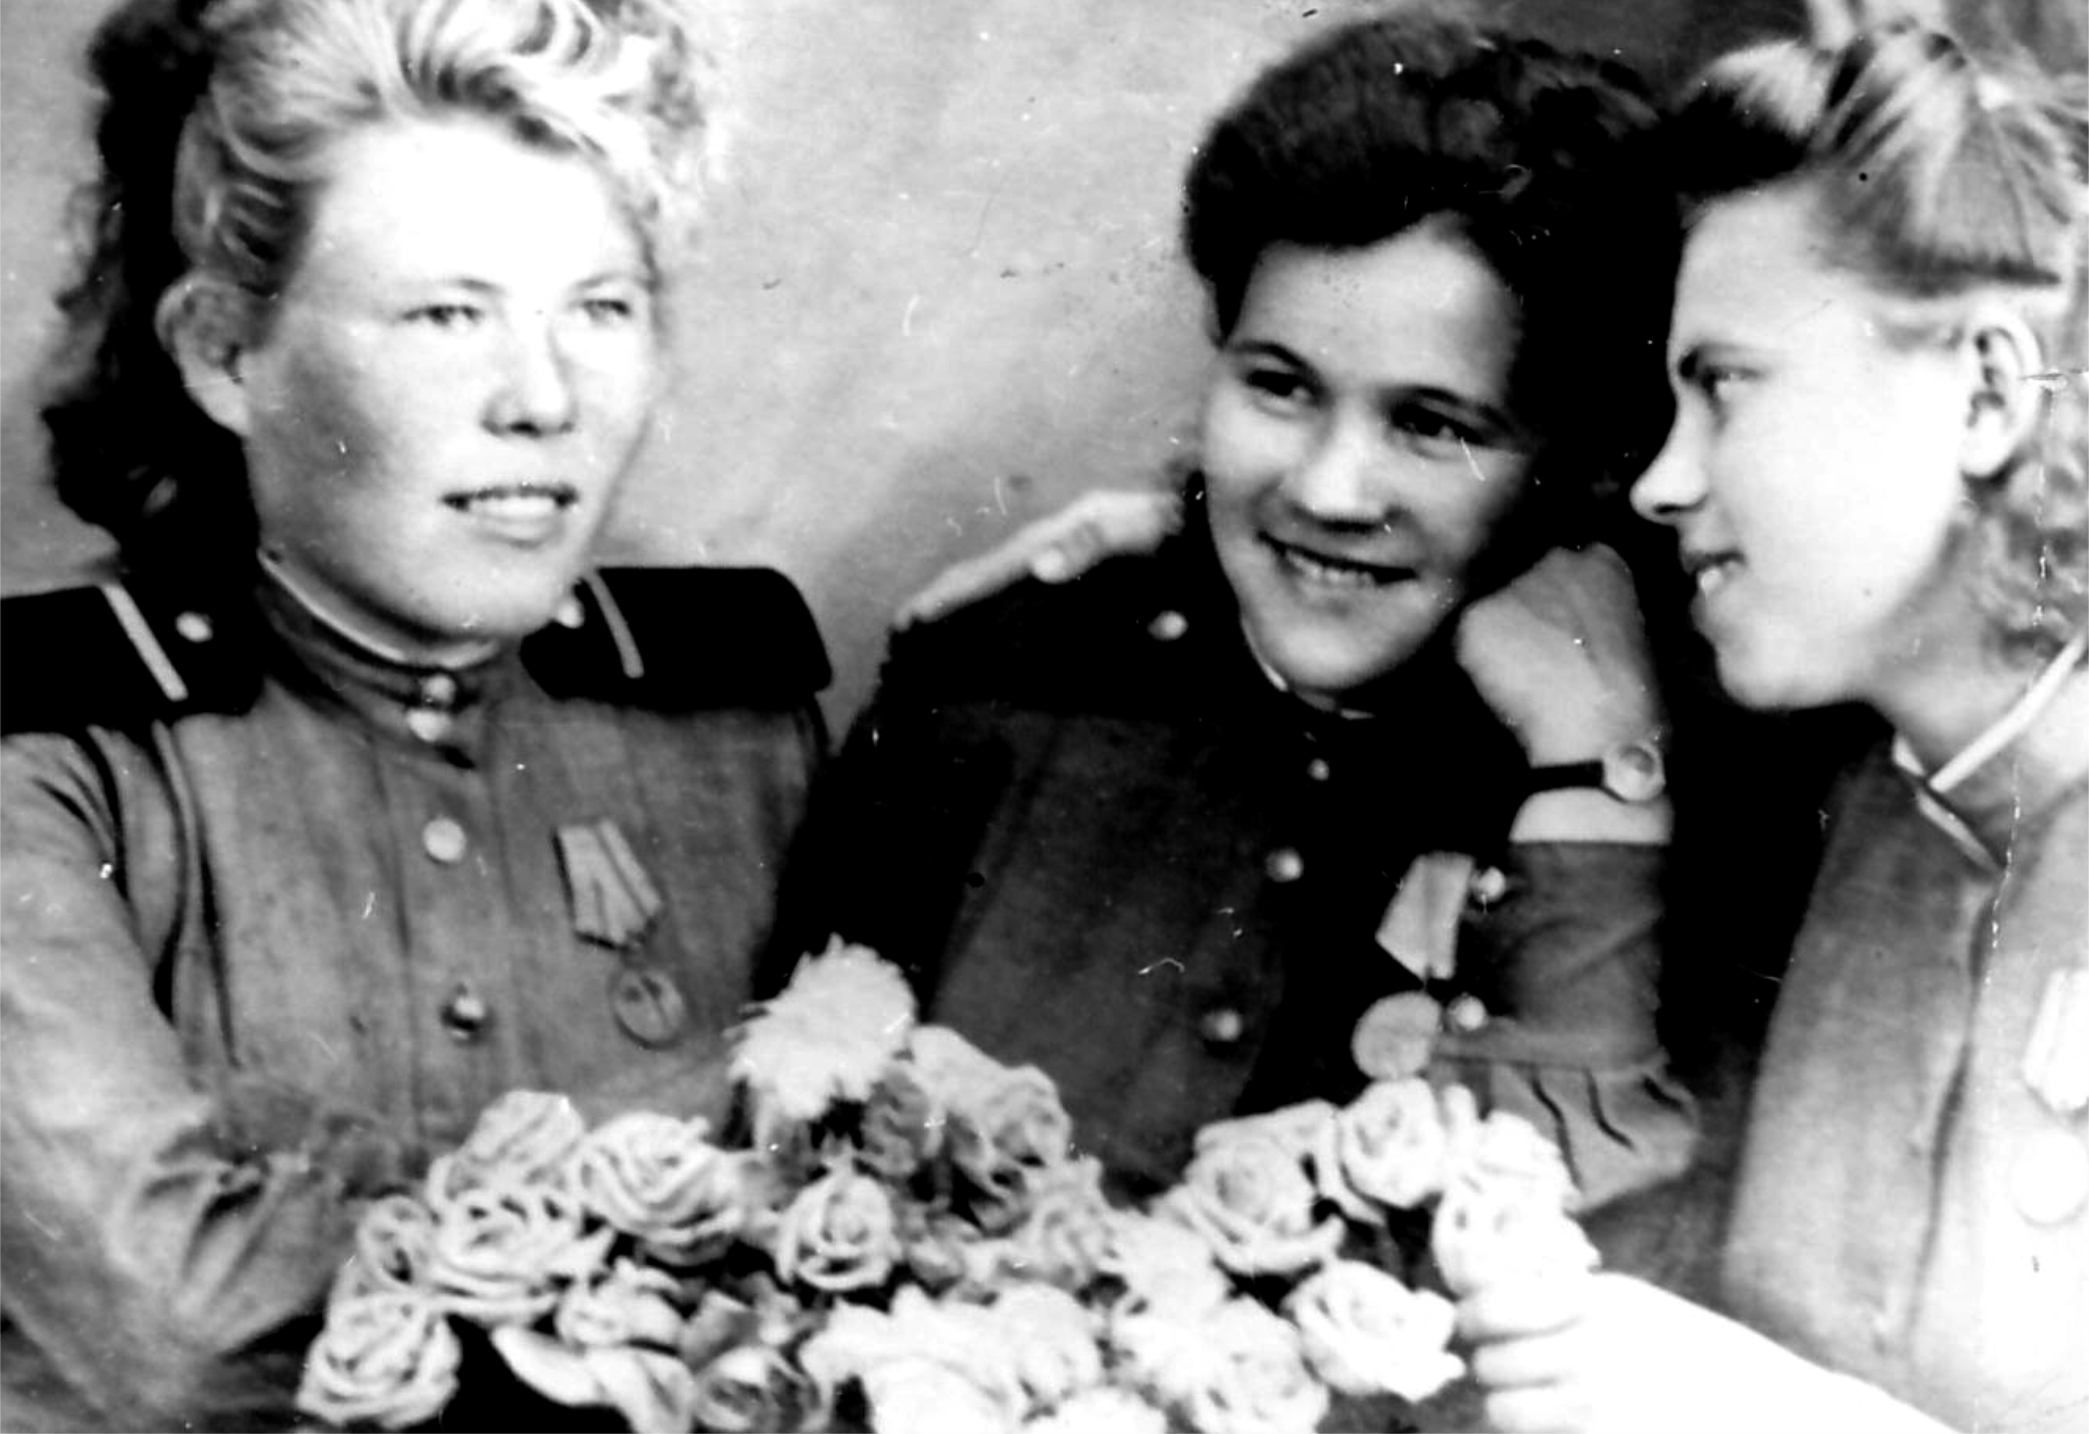 Ф.Х. Султанова (Слева) с боевыми подругами, уроженки района, 1940 г.